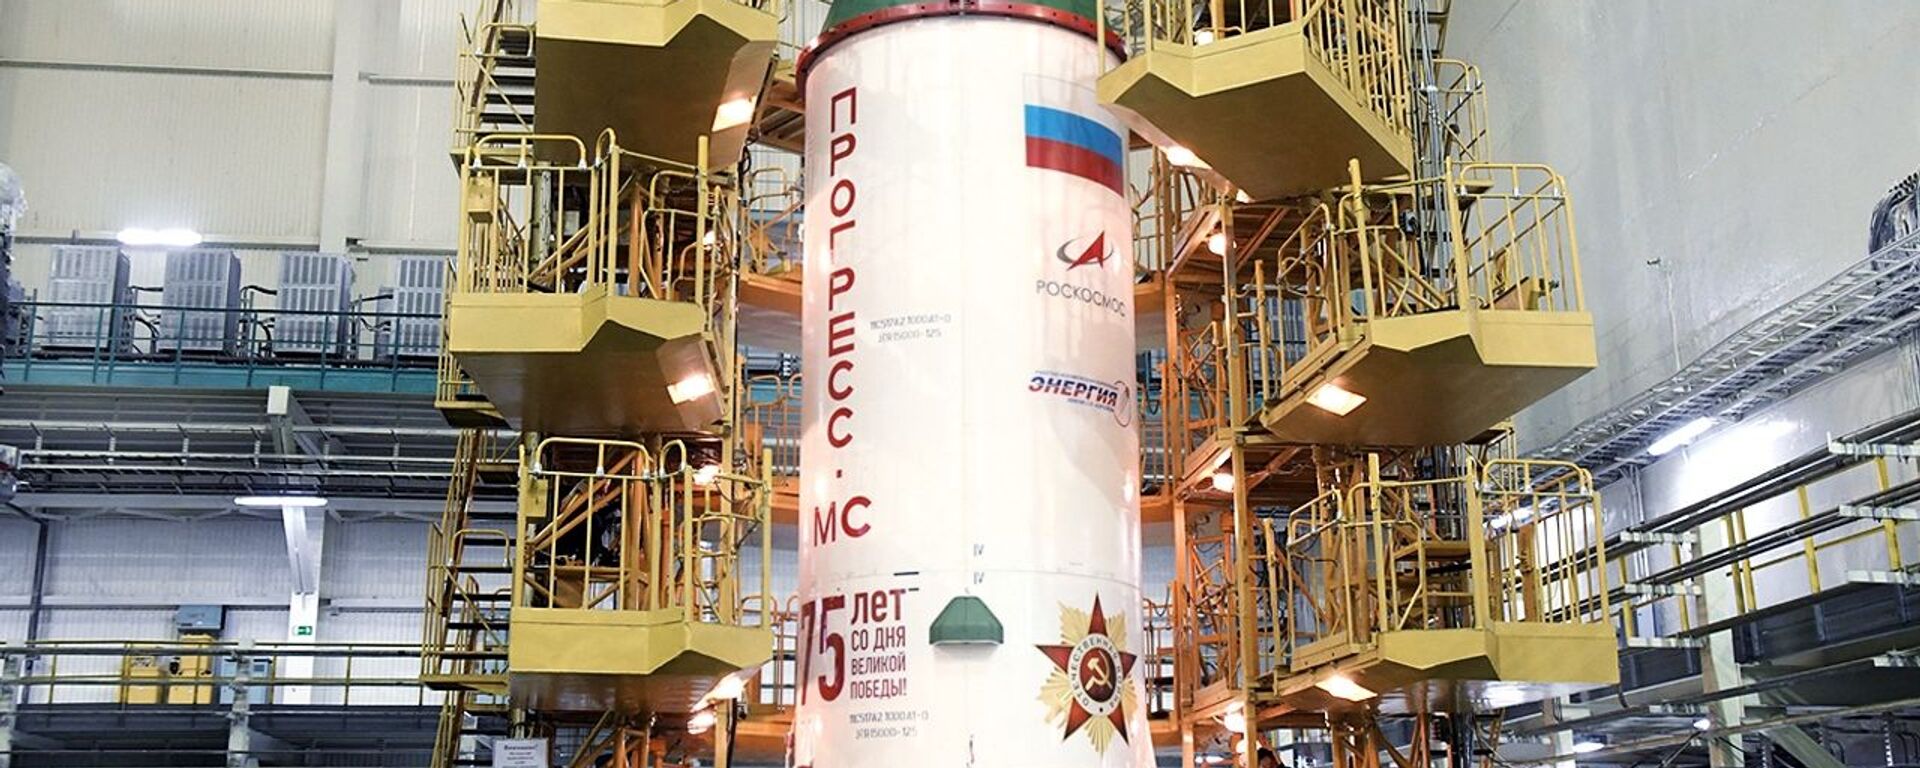  وكالة الفضاء الروسية روس كوسموس تقدم صاروخ حامل جديد يحمل اسم بوبيدا (النصر)، بمناسبة الذكرى الـ75 لعيد النصر في الحرب الوطنية العظمى (1941-1945)  - سبوتنيك عربي, 1920, 18.12.2022